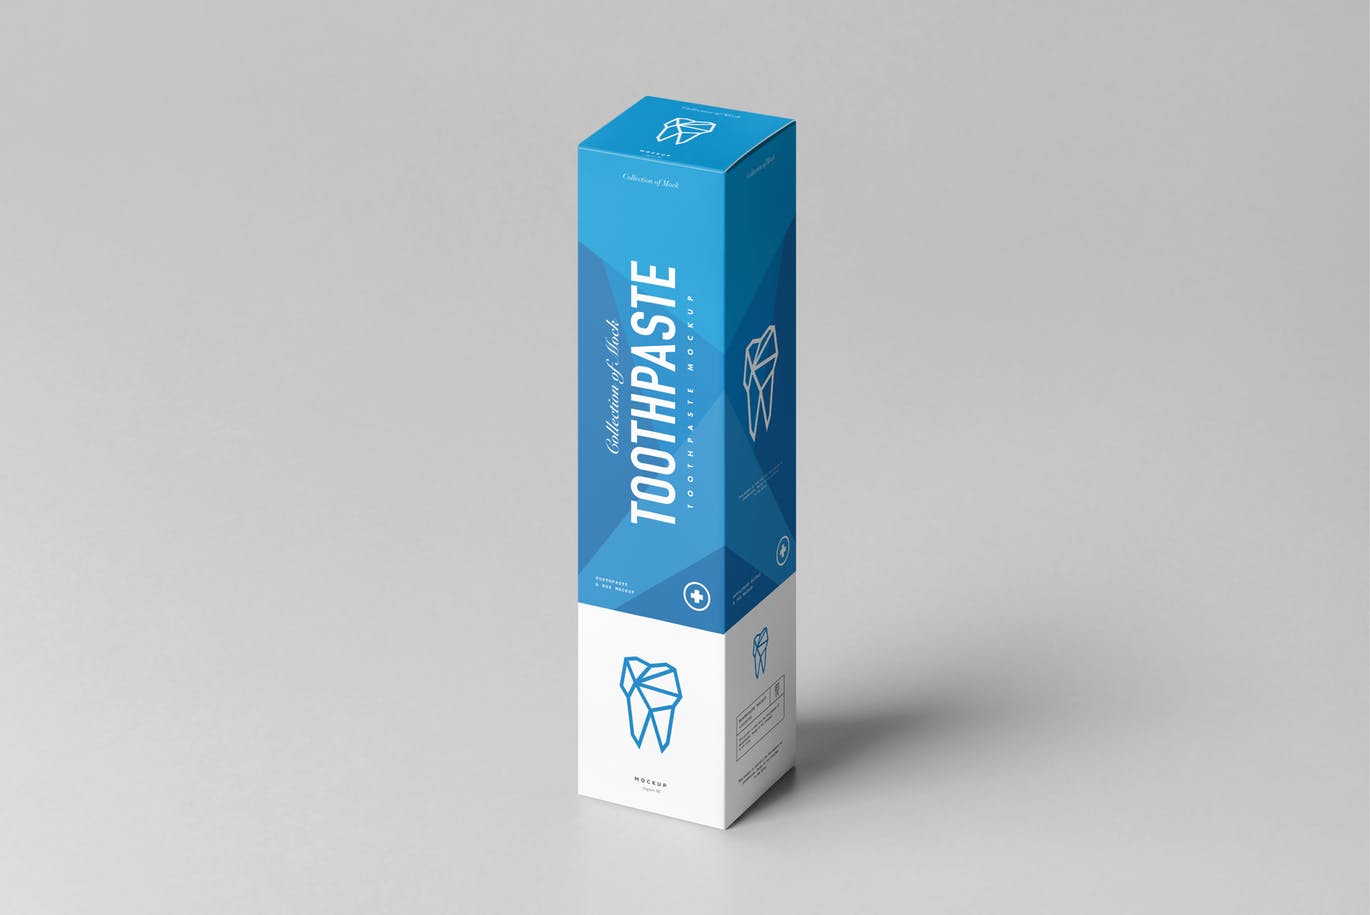 高品质的时尚高端逼真质感的牙膏包装toothpaste-mo